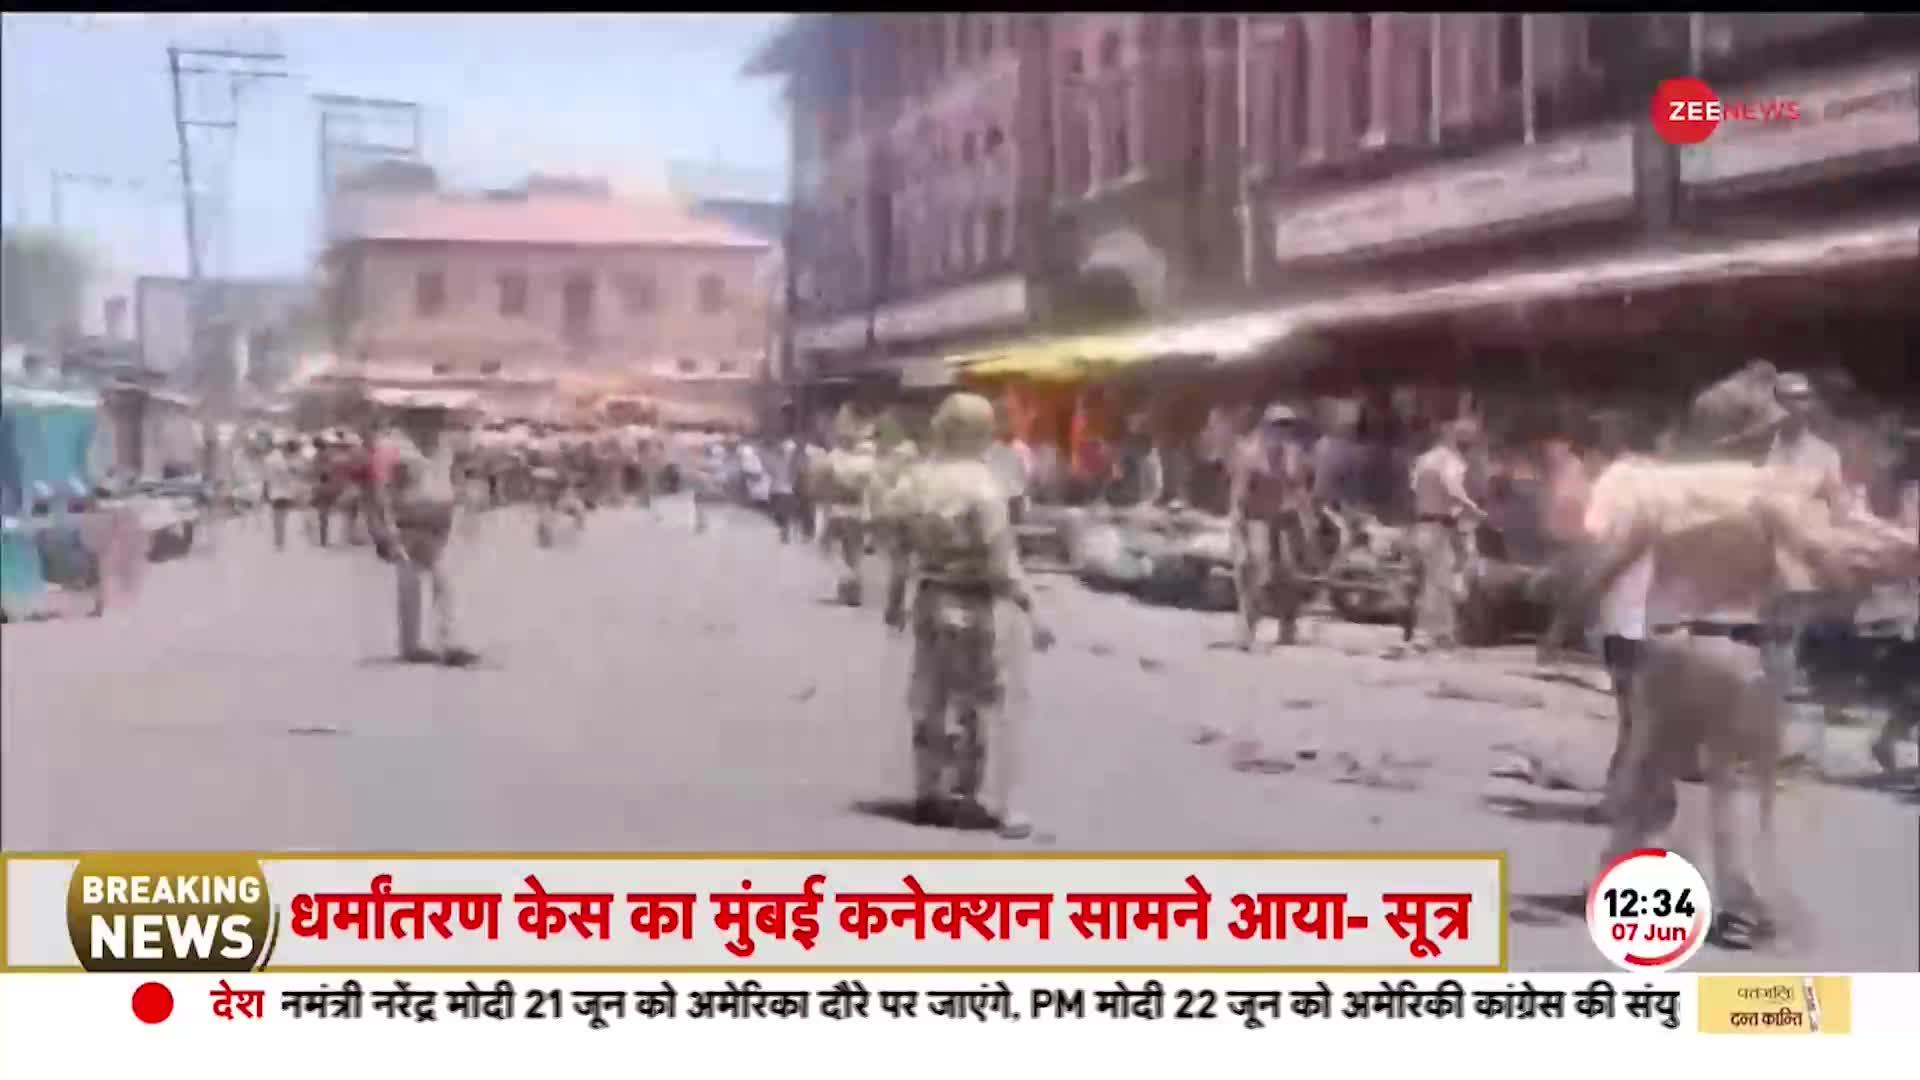 Maharashtra के Kolhapur में हिंदू संगठनों का प्रदर्शन, Police ने किया Lathicharge